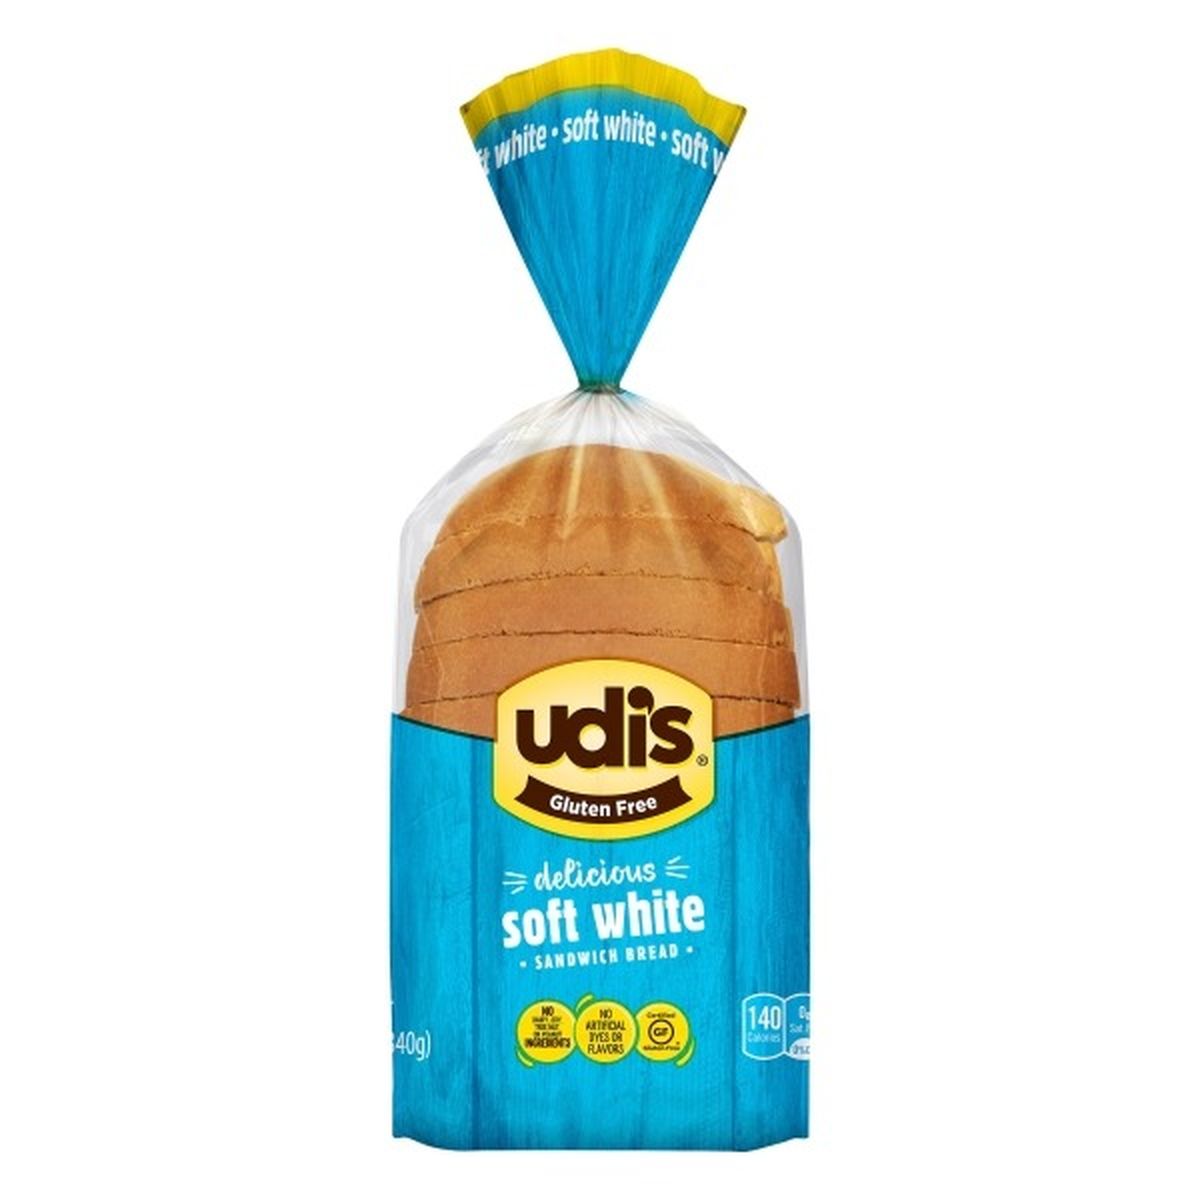 Calories in Udi's Sandwich Bread, Soft White